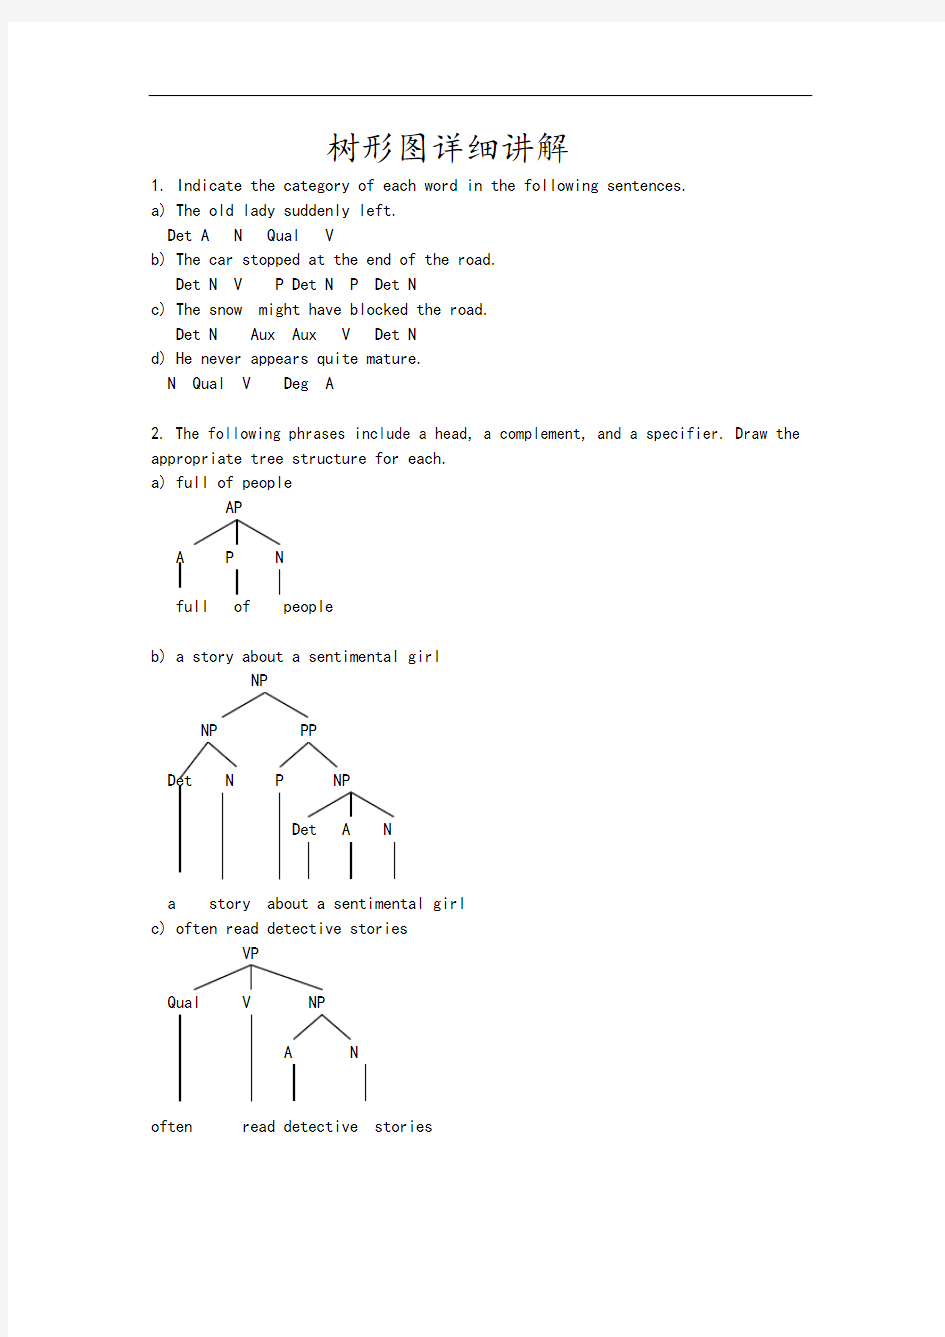 英语语言学树型图详细讲解